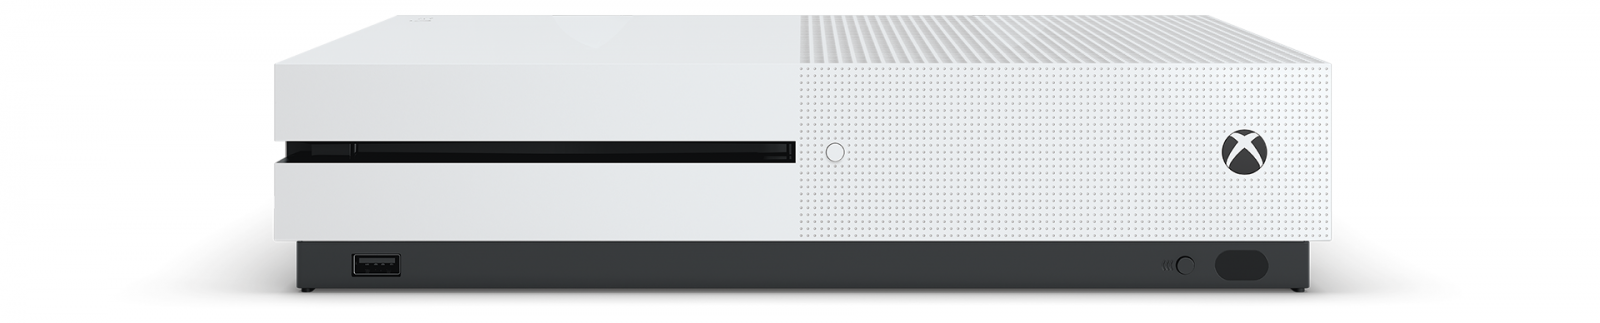 Xbox One S 1TB с двумя джойстиками + игра Mortal Kombat XL image1